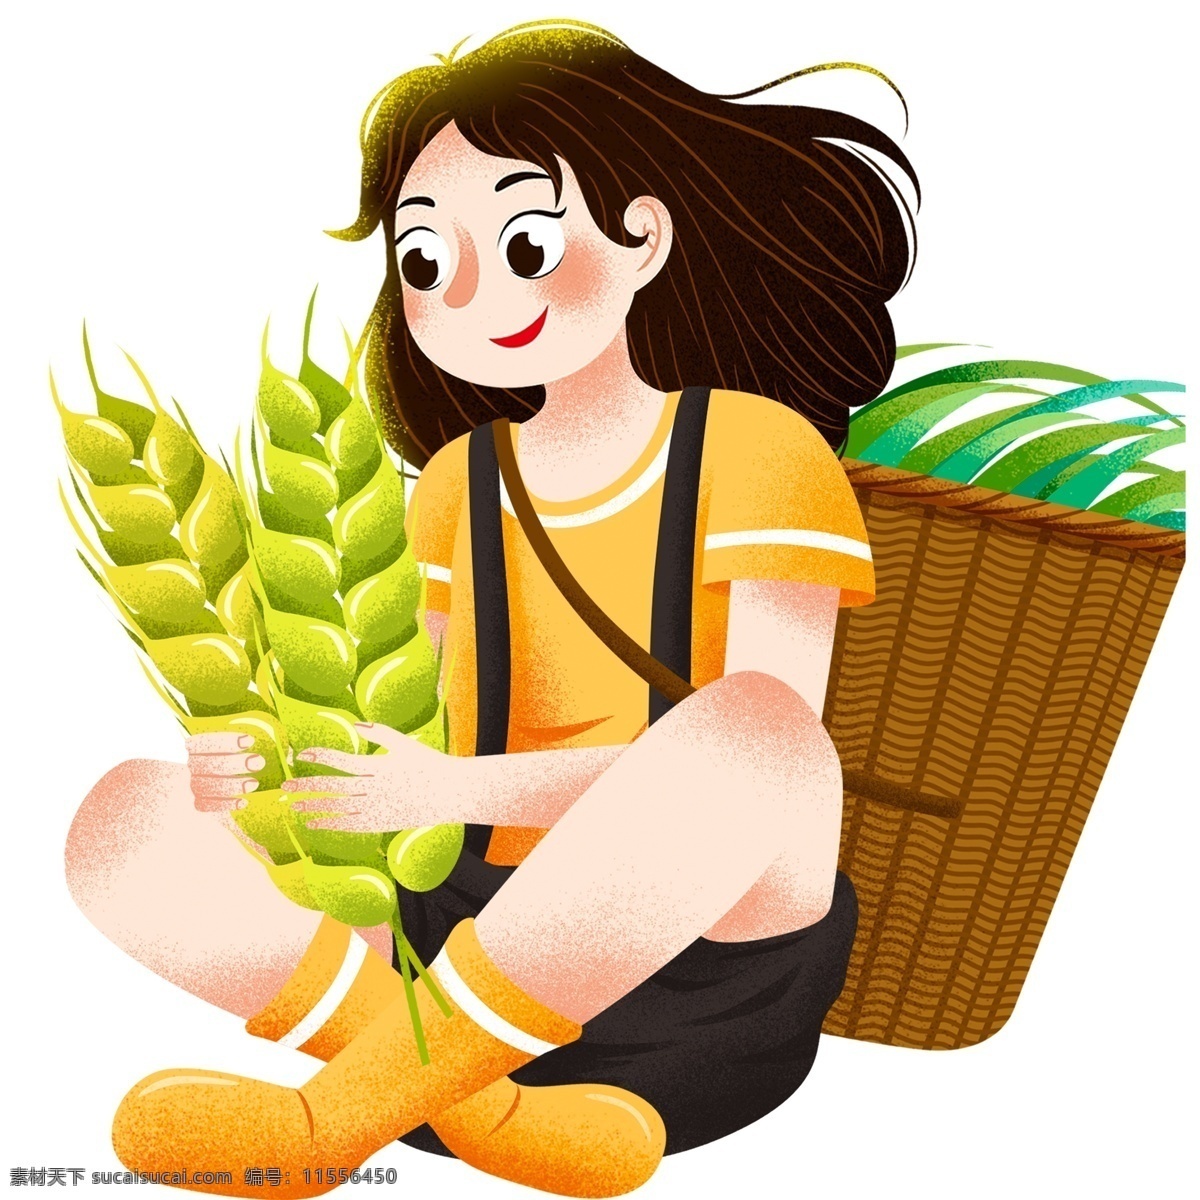 卡通 人物 小女孩 插画 女孩 农民 水稻 彩色 小清新 创意 手绘 绘画元素 现代 简约 装饰 图案